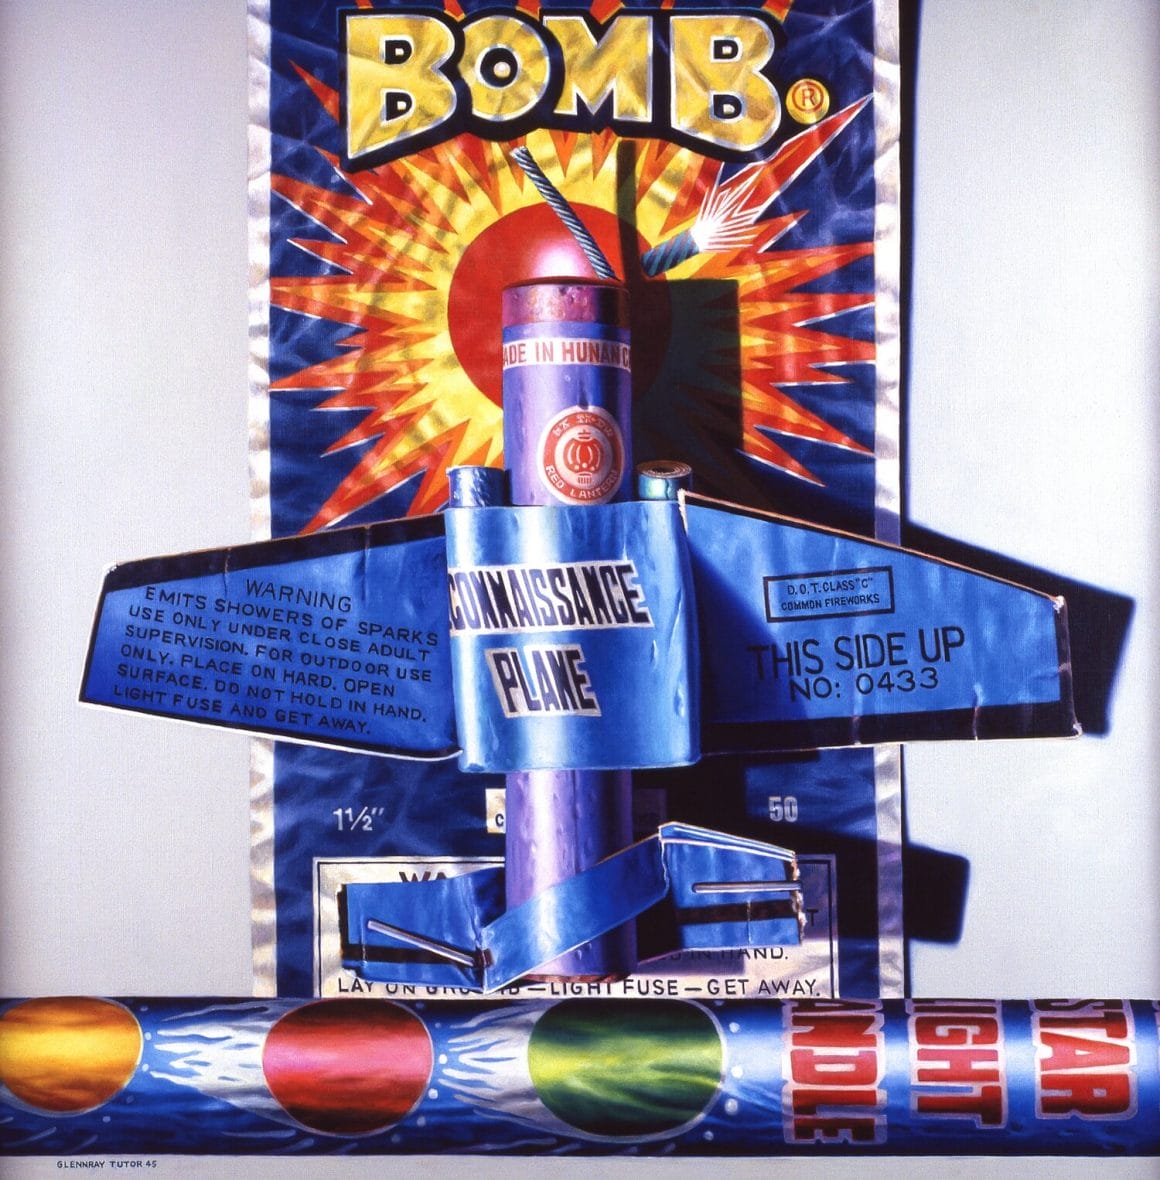 Bomb - petit feu d'artifice en forme d'avion avec écrit "BOMB" sur l'emballage 